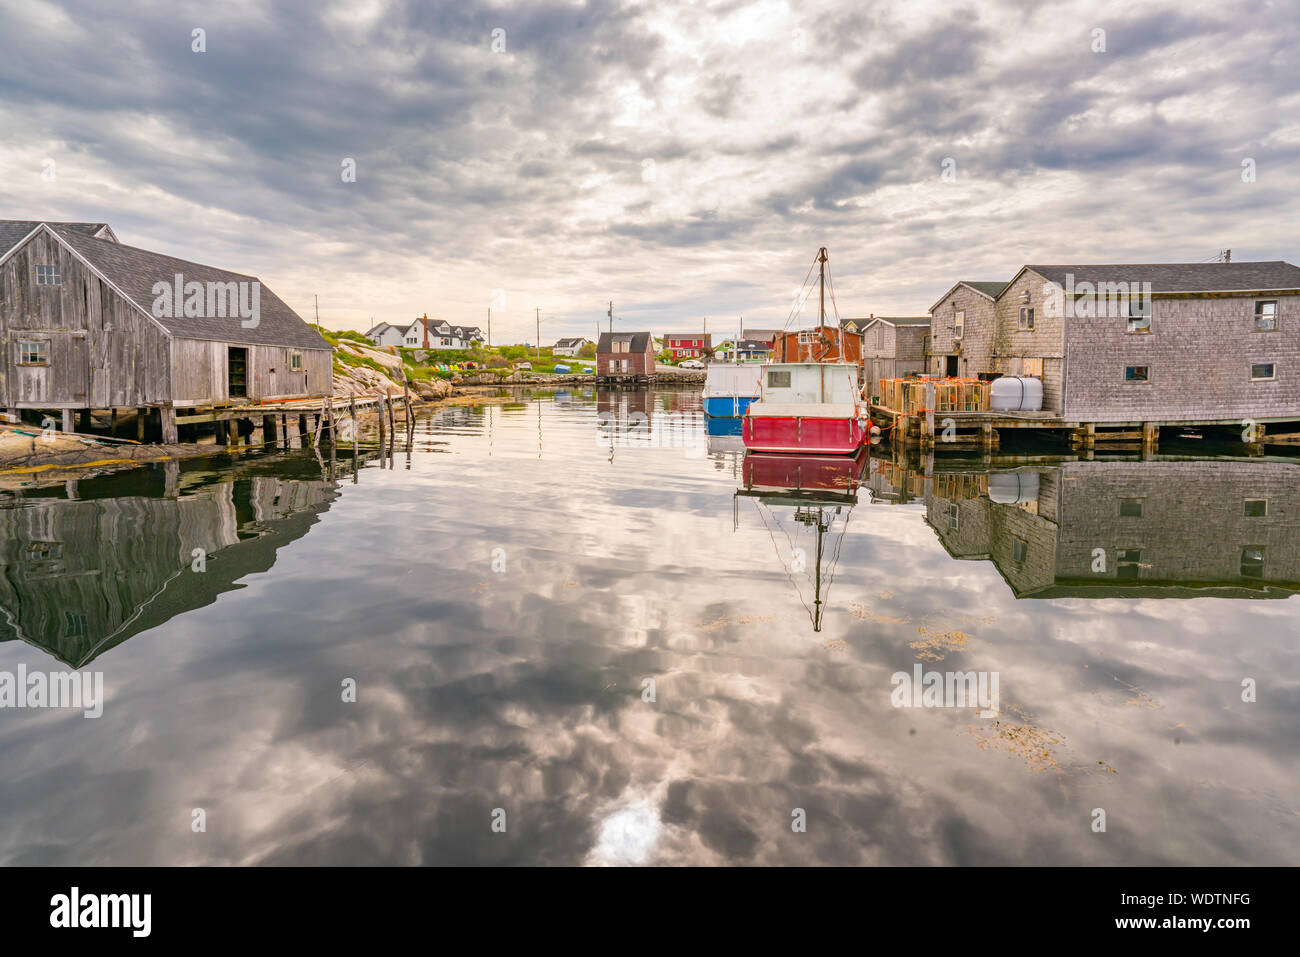 Historic Peggy's Cove fishing village in Nova Scotia, Canada Stock Photo